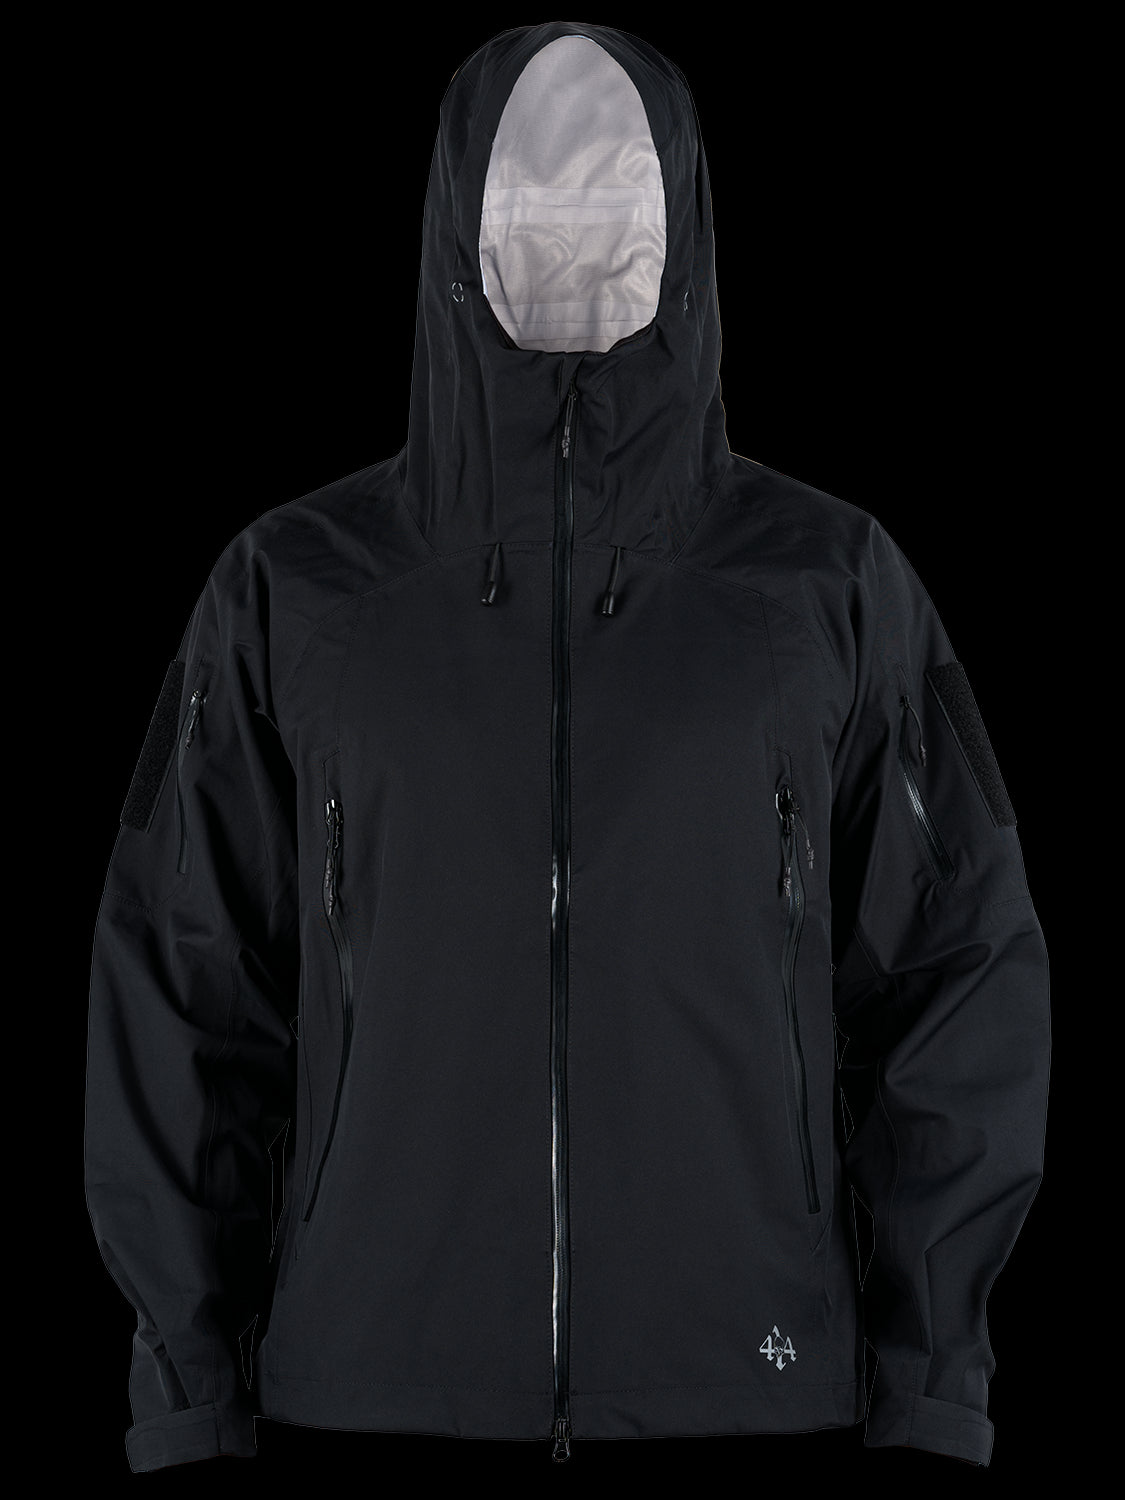 4-14 Rainwear Jacket - Black (ATACAMA)